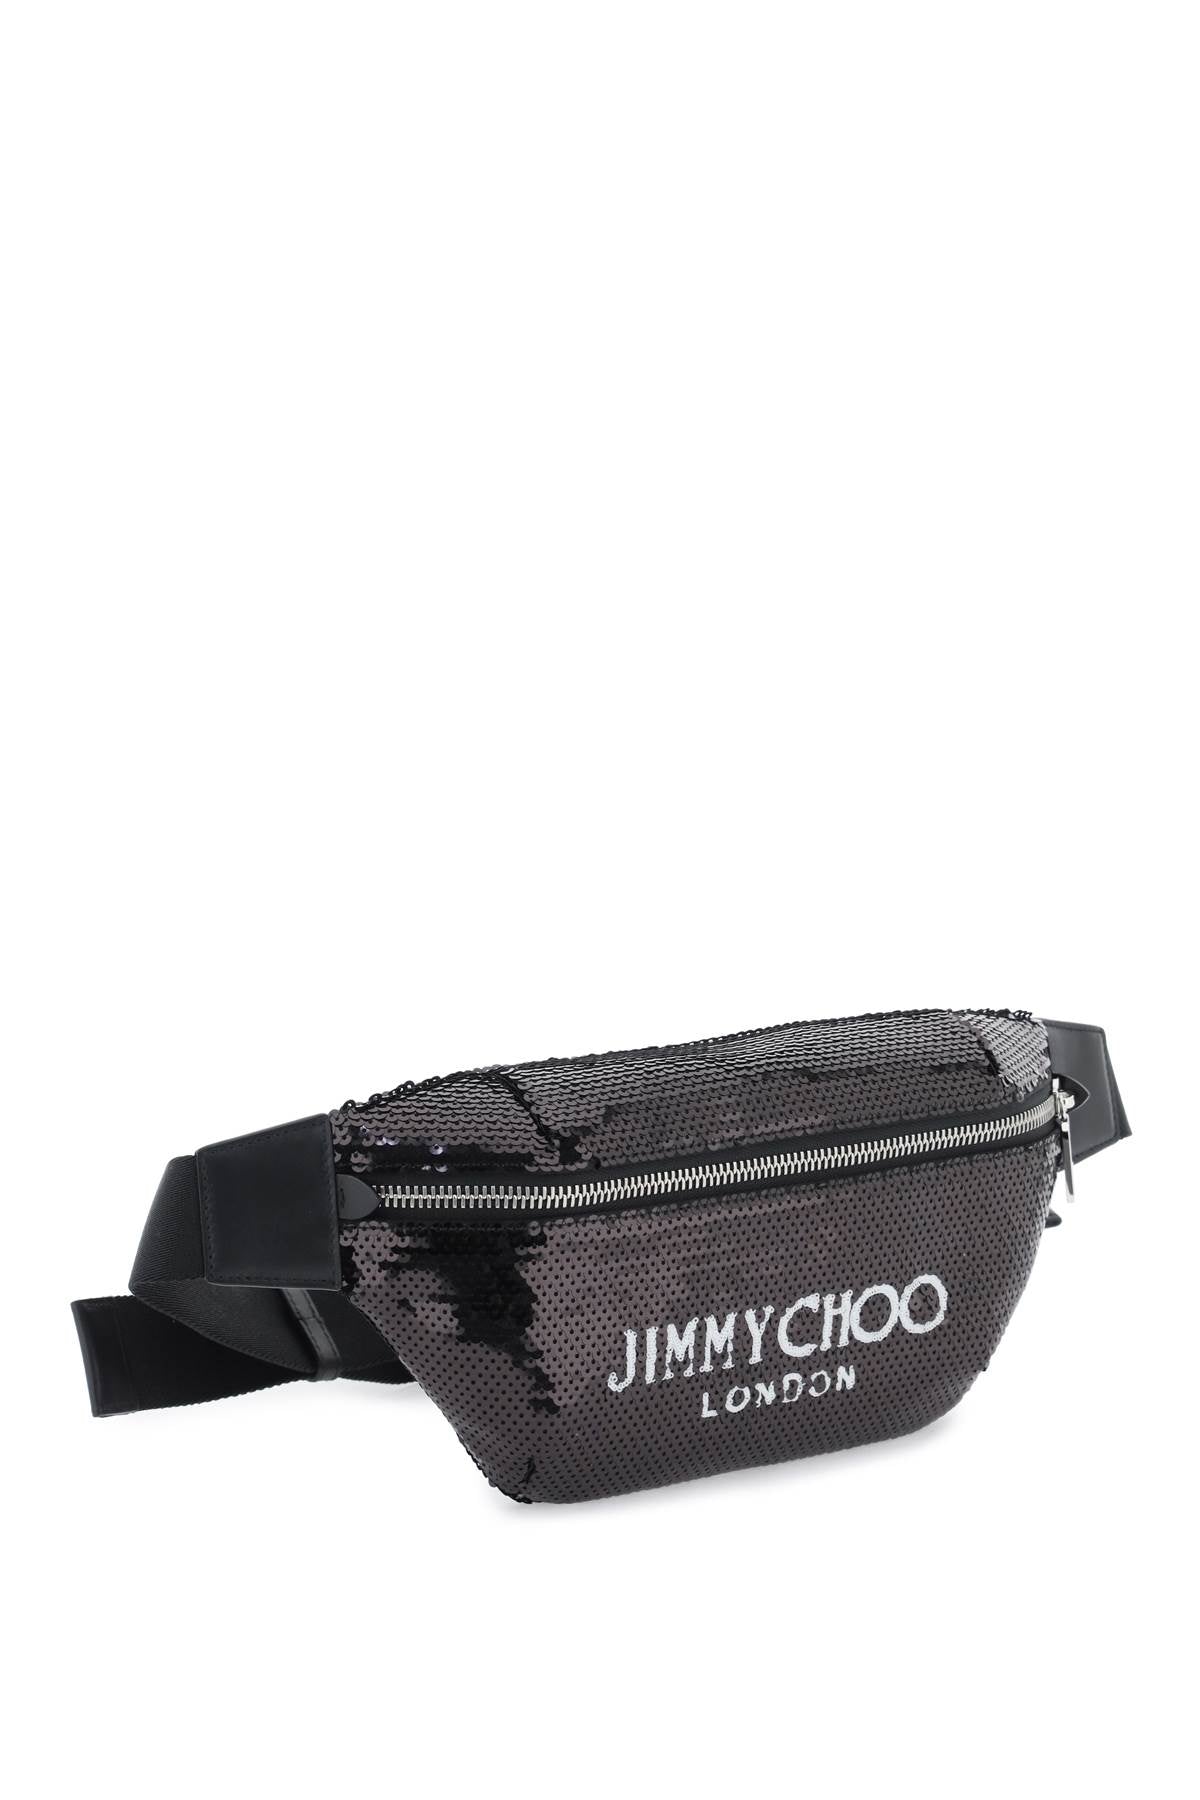 Jimmy choo finsley beltpack-2